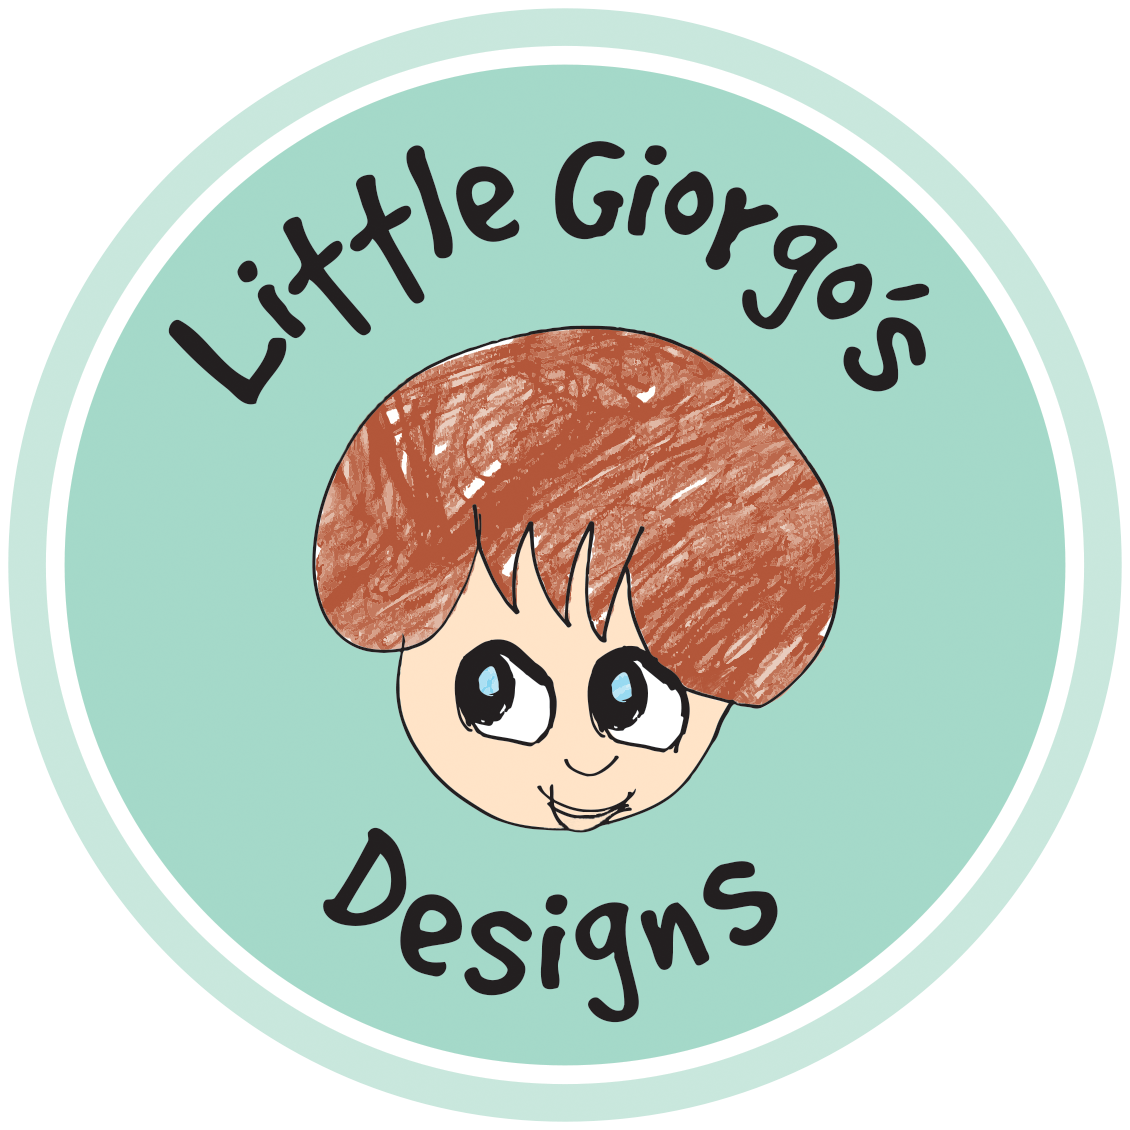 Little Giorgo's Designs